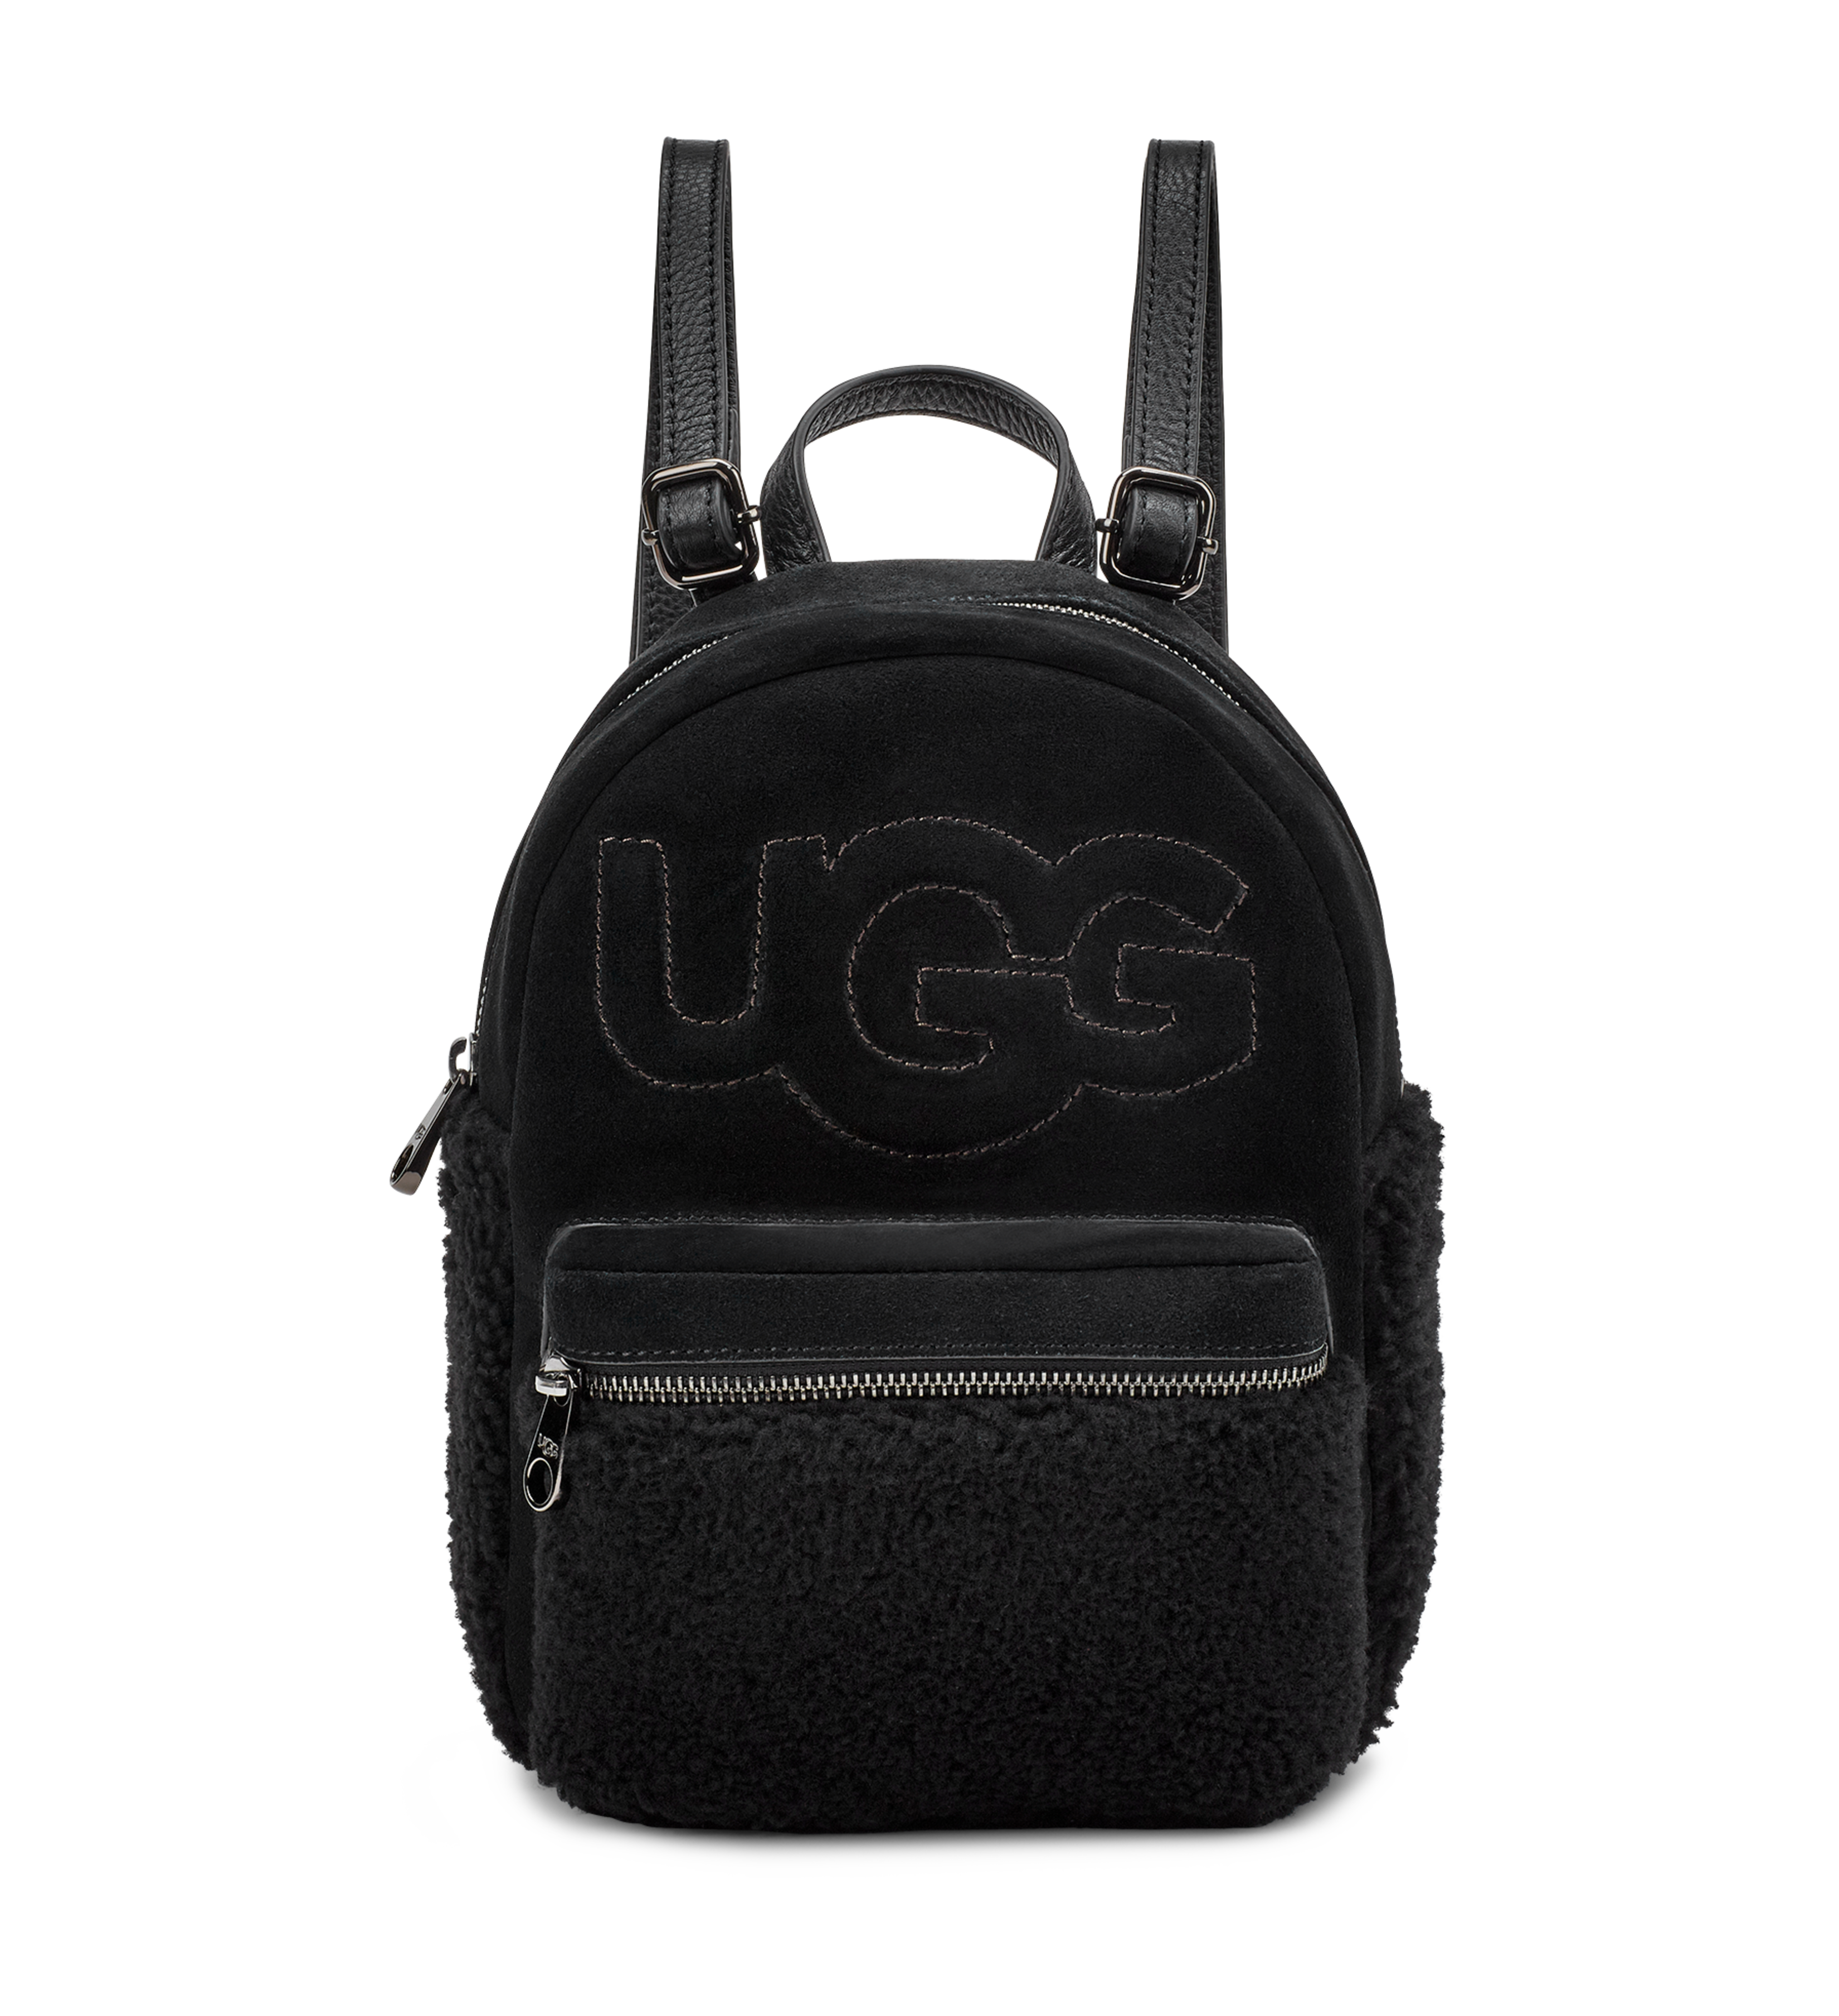 Dannie II Mini Backpack Sheep | UGG